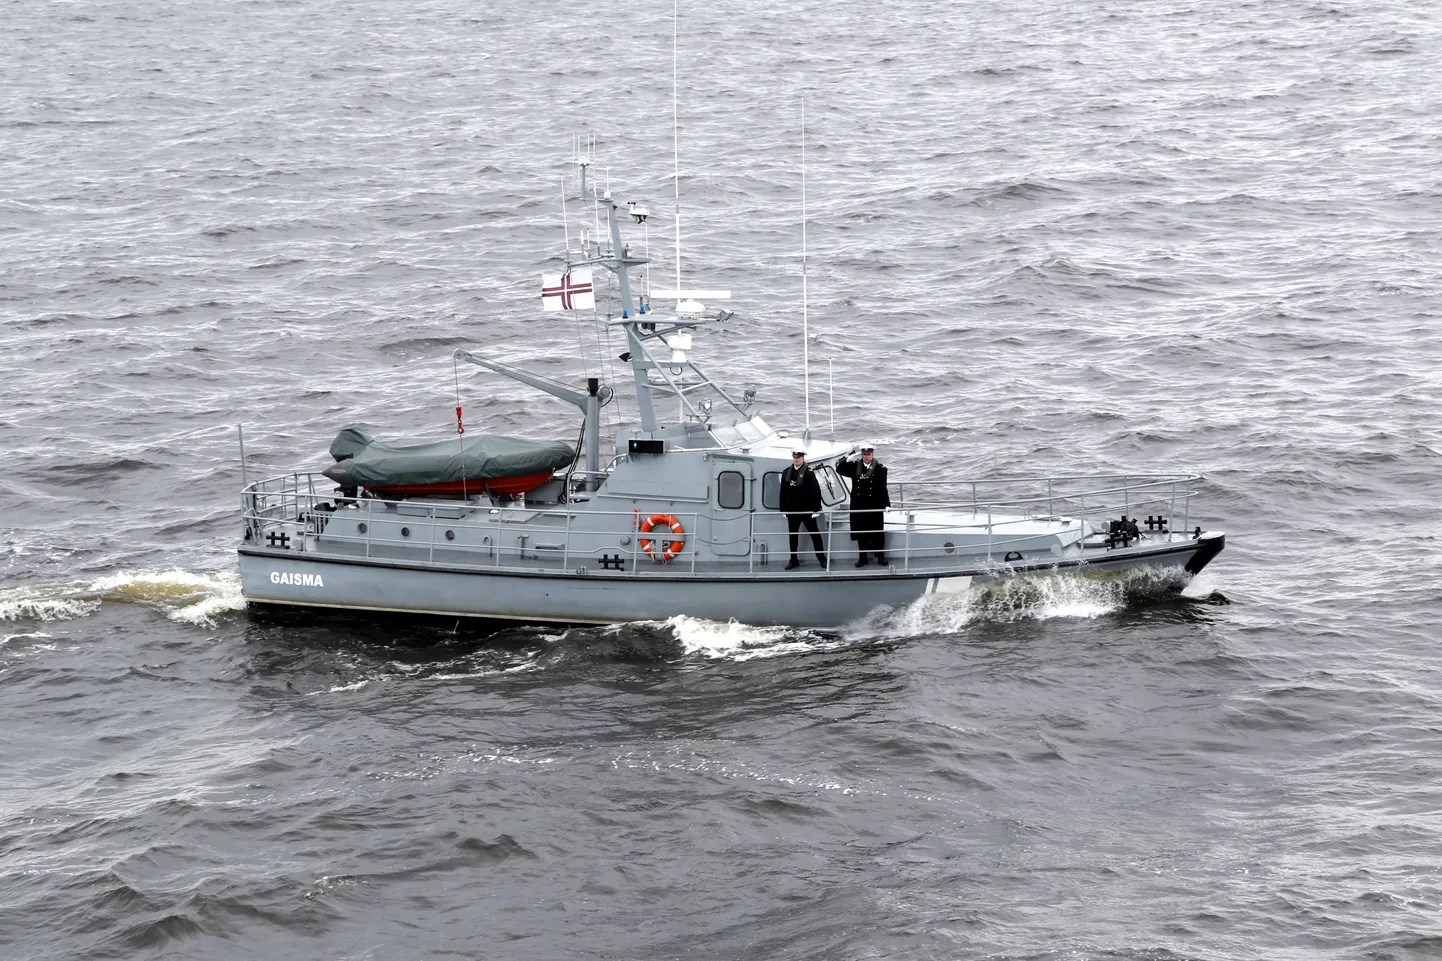 Latvijas Jūras spēku krasta apsardzes kuģis KA-06 "Gaisma", atzīmējot Jūras spēku atjaunošanas 25.gadadienu, piedalās kuģu parādē Rīgas jūras līcī.